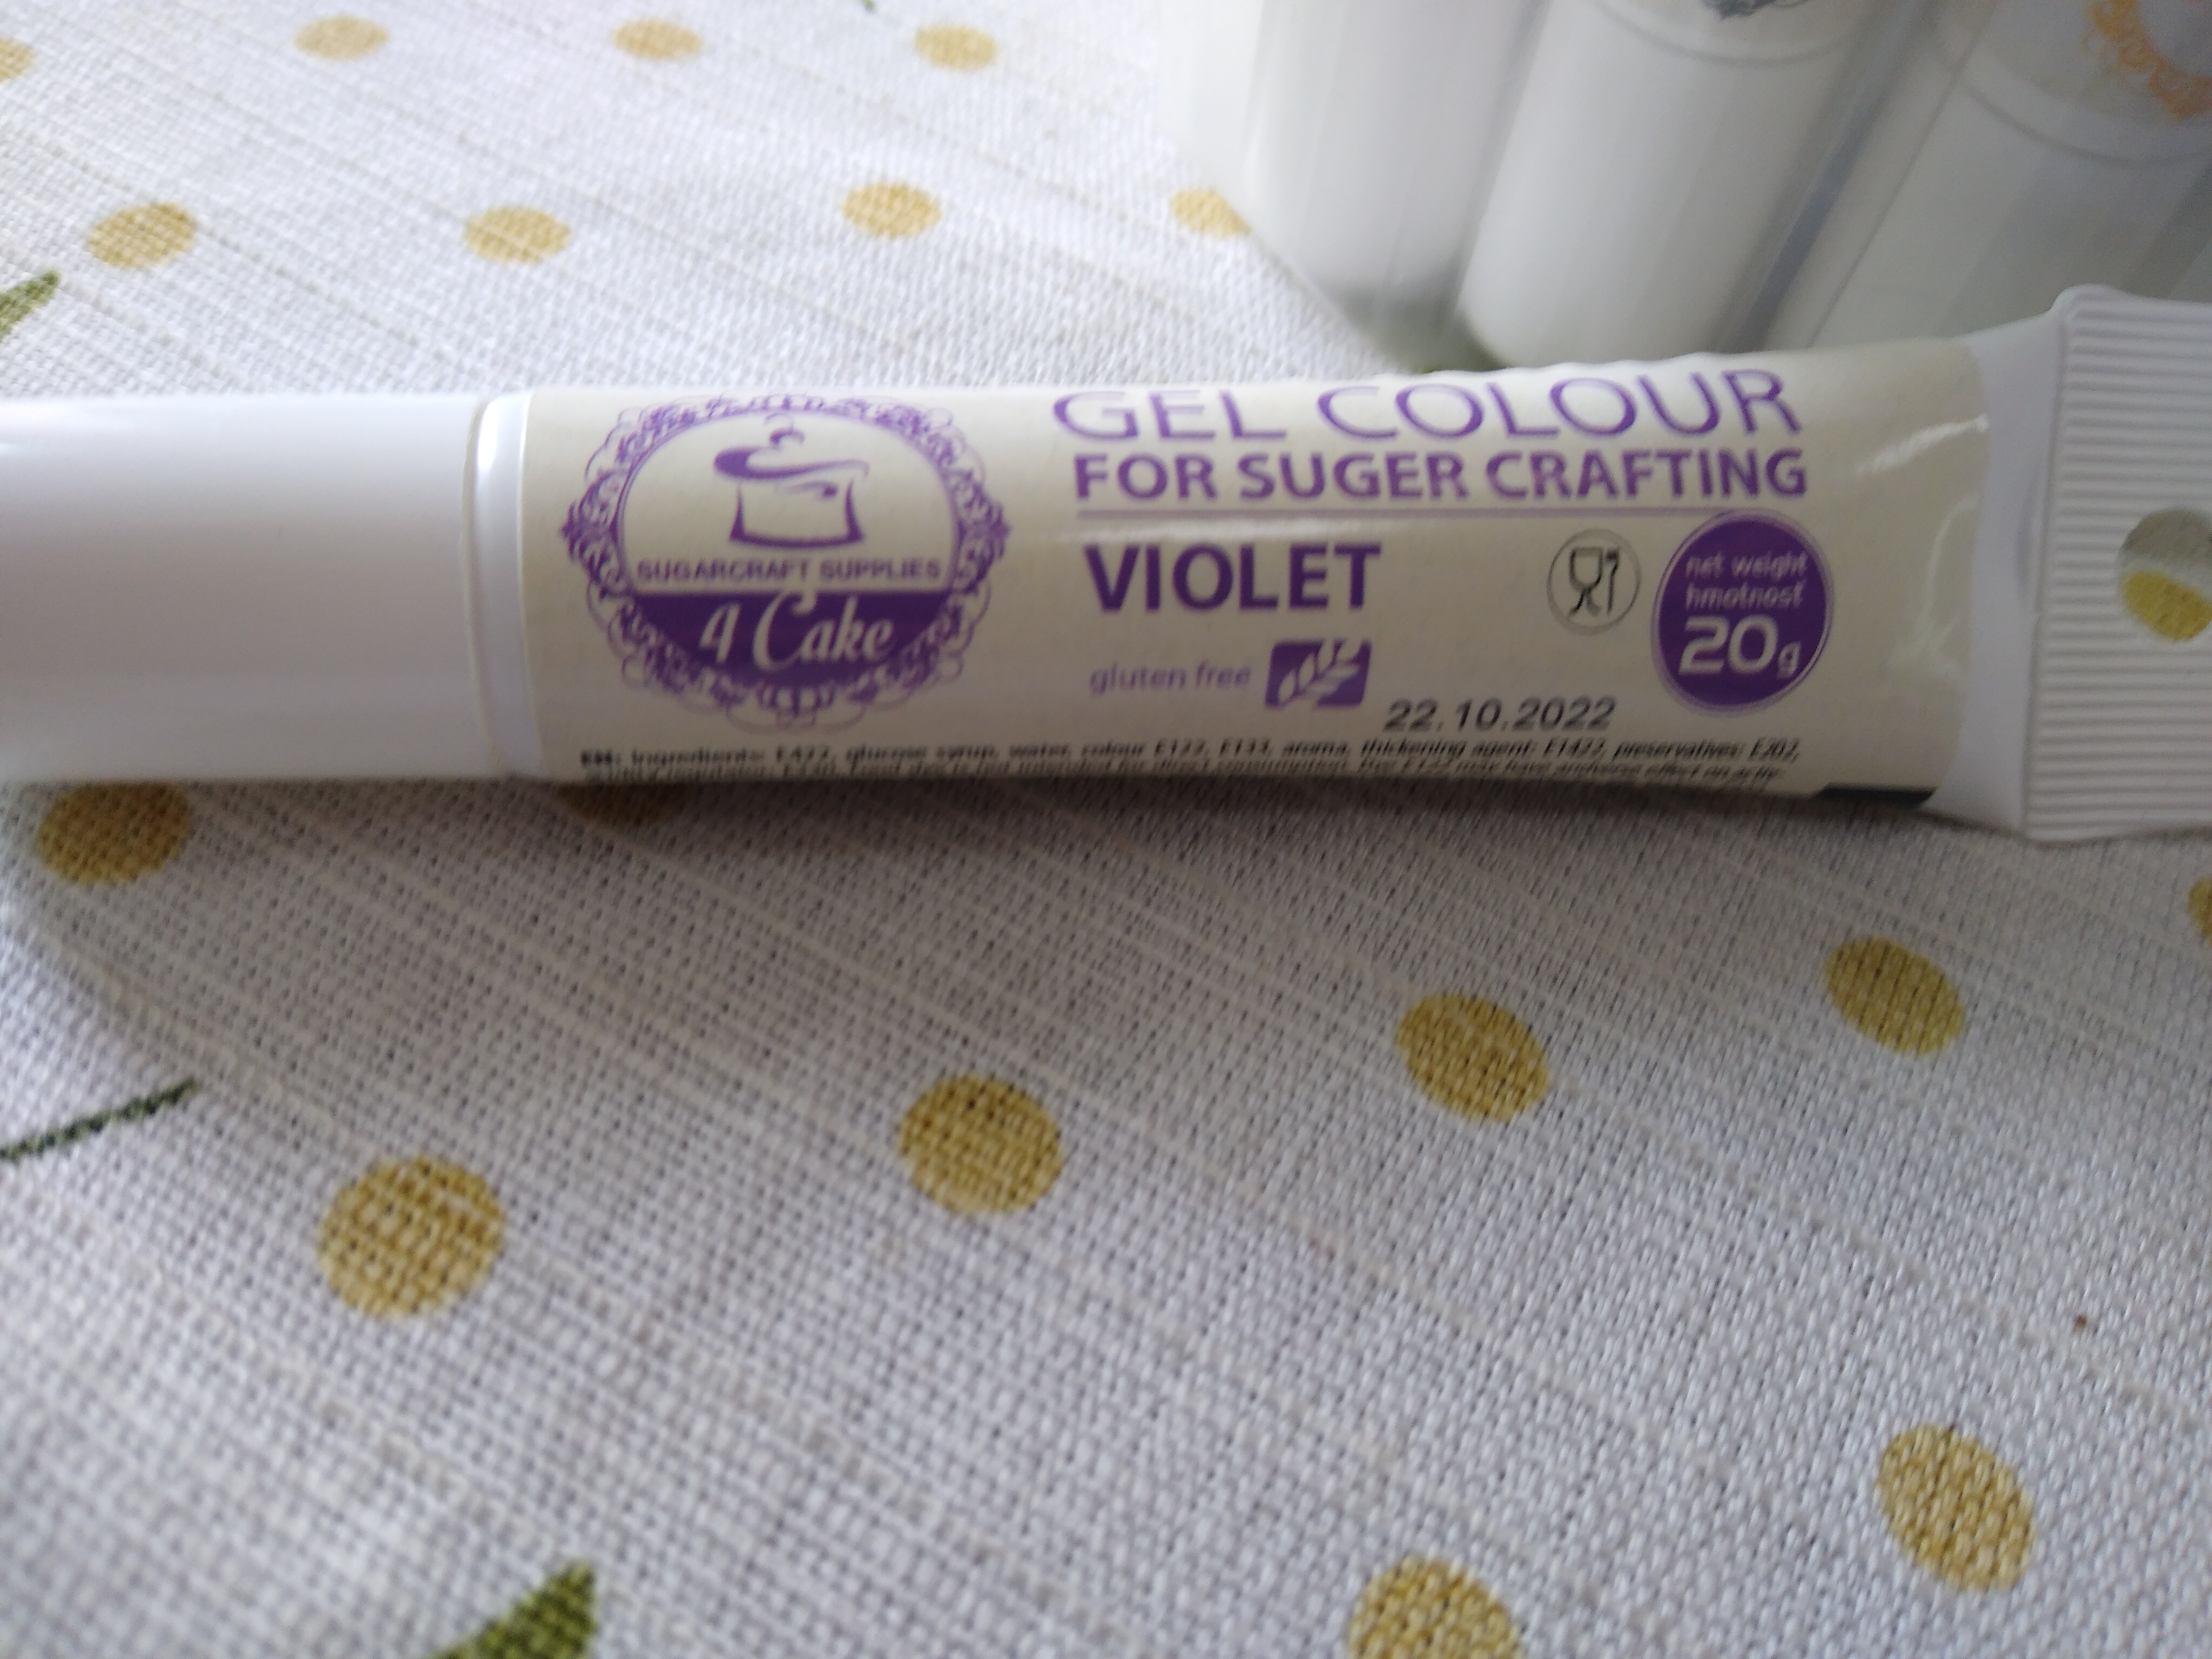 Violet (fialová) gelová 20 g